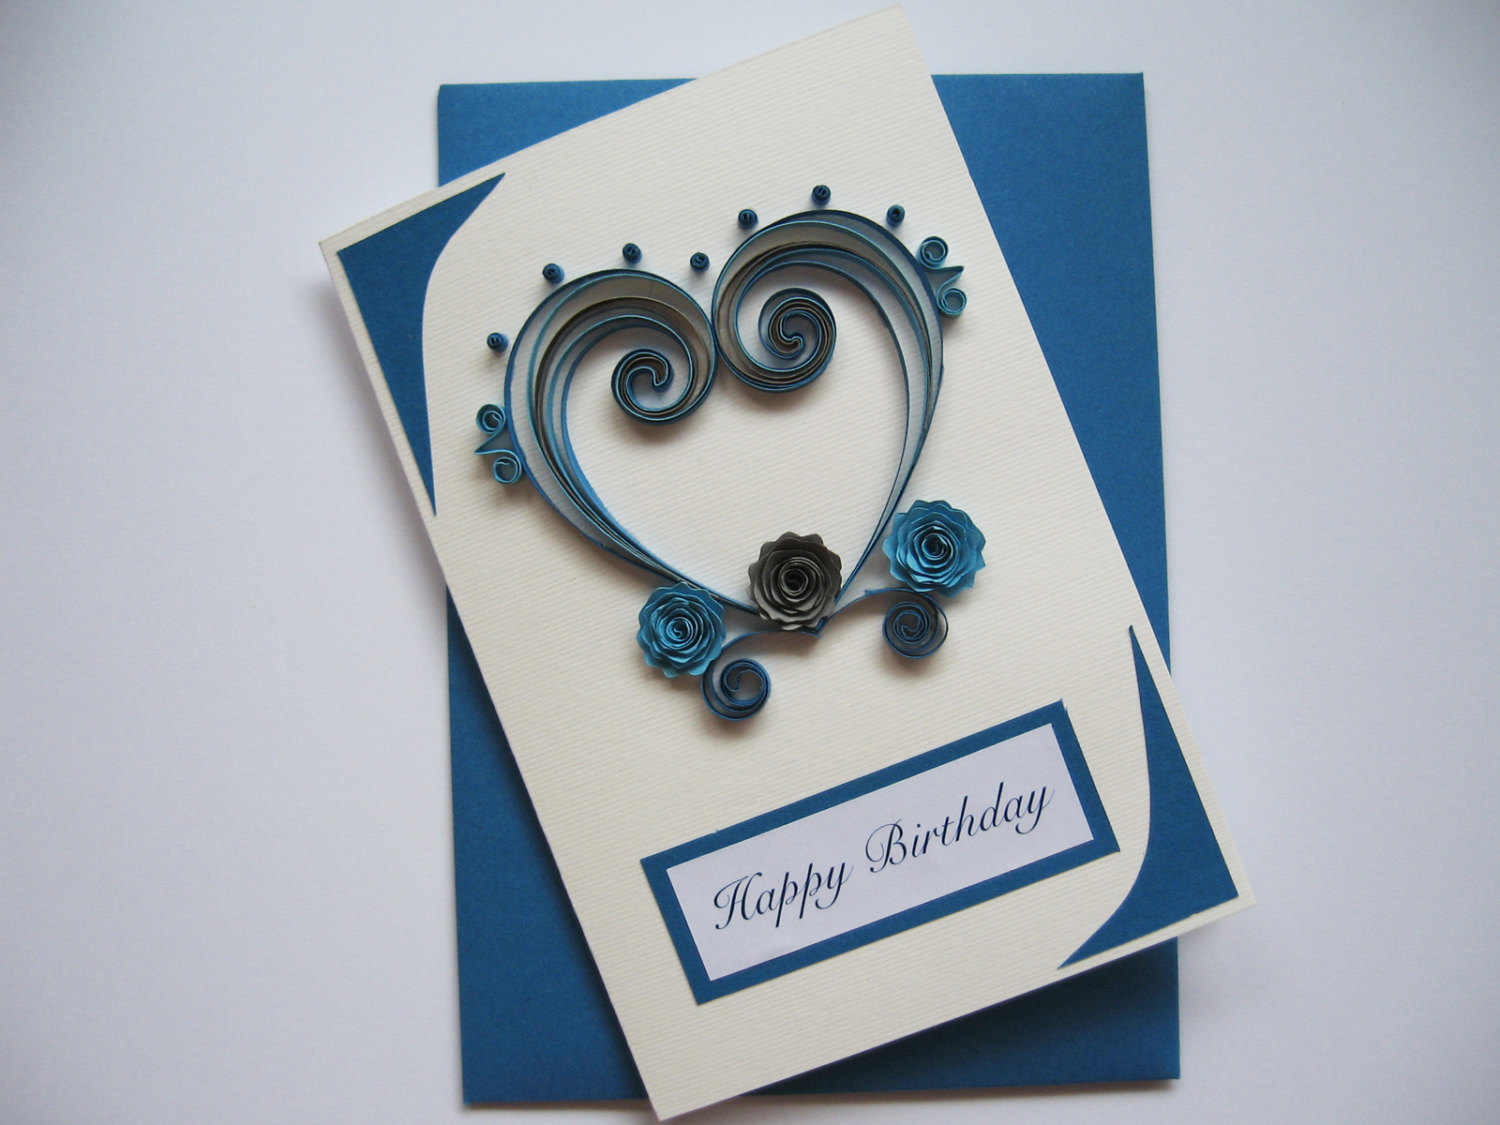 Birthday Card For Girlfriend Ideas Handmade Greeting Card Ideas For Boyfriend Handmade Birthday Card